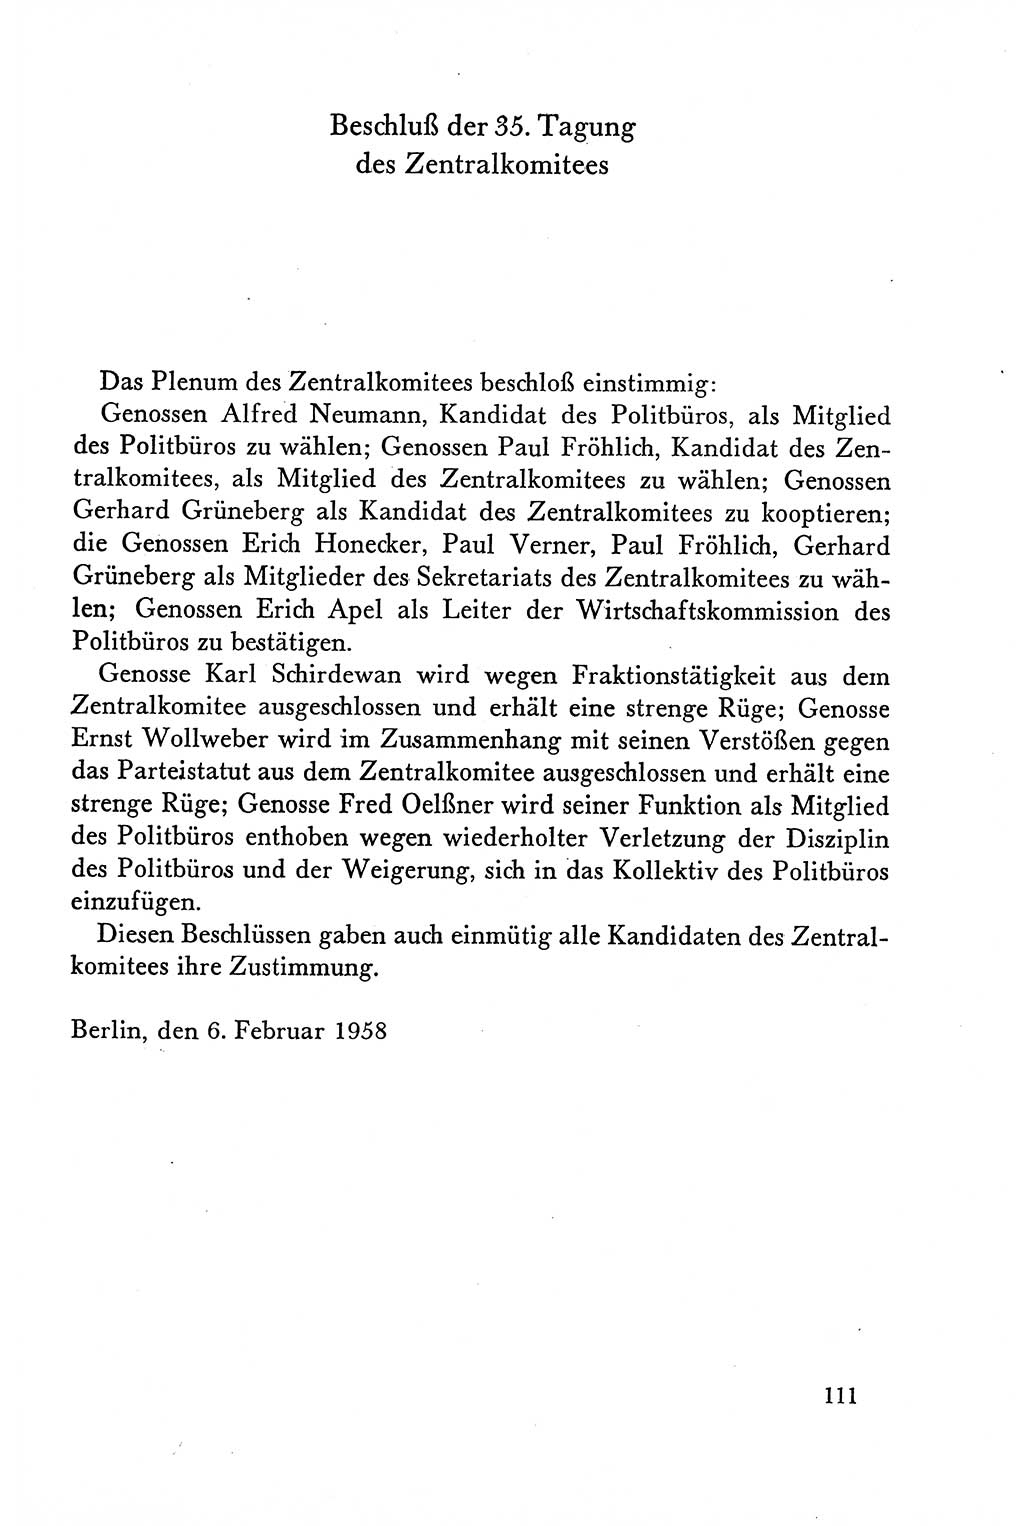 Dokumente der Sozialistischen Einheitspartei Deutschlands (SED) [Deutsche Demokratische Republik (DDR)] 1958-1959, Seite 111 (Dok. SED DDR 1958-1959, S. 111)